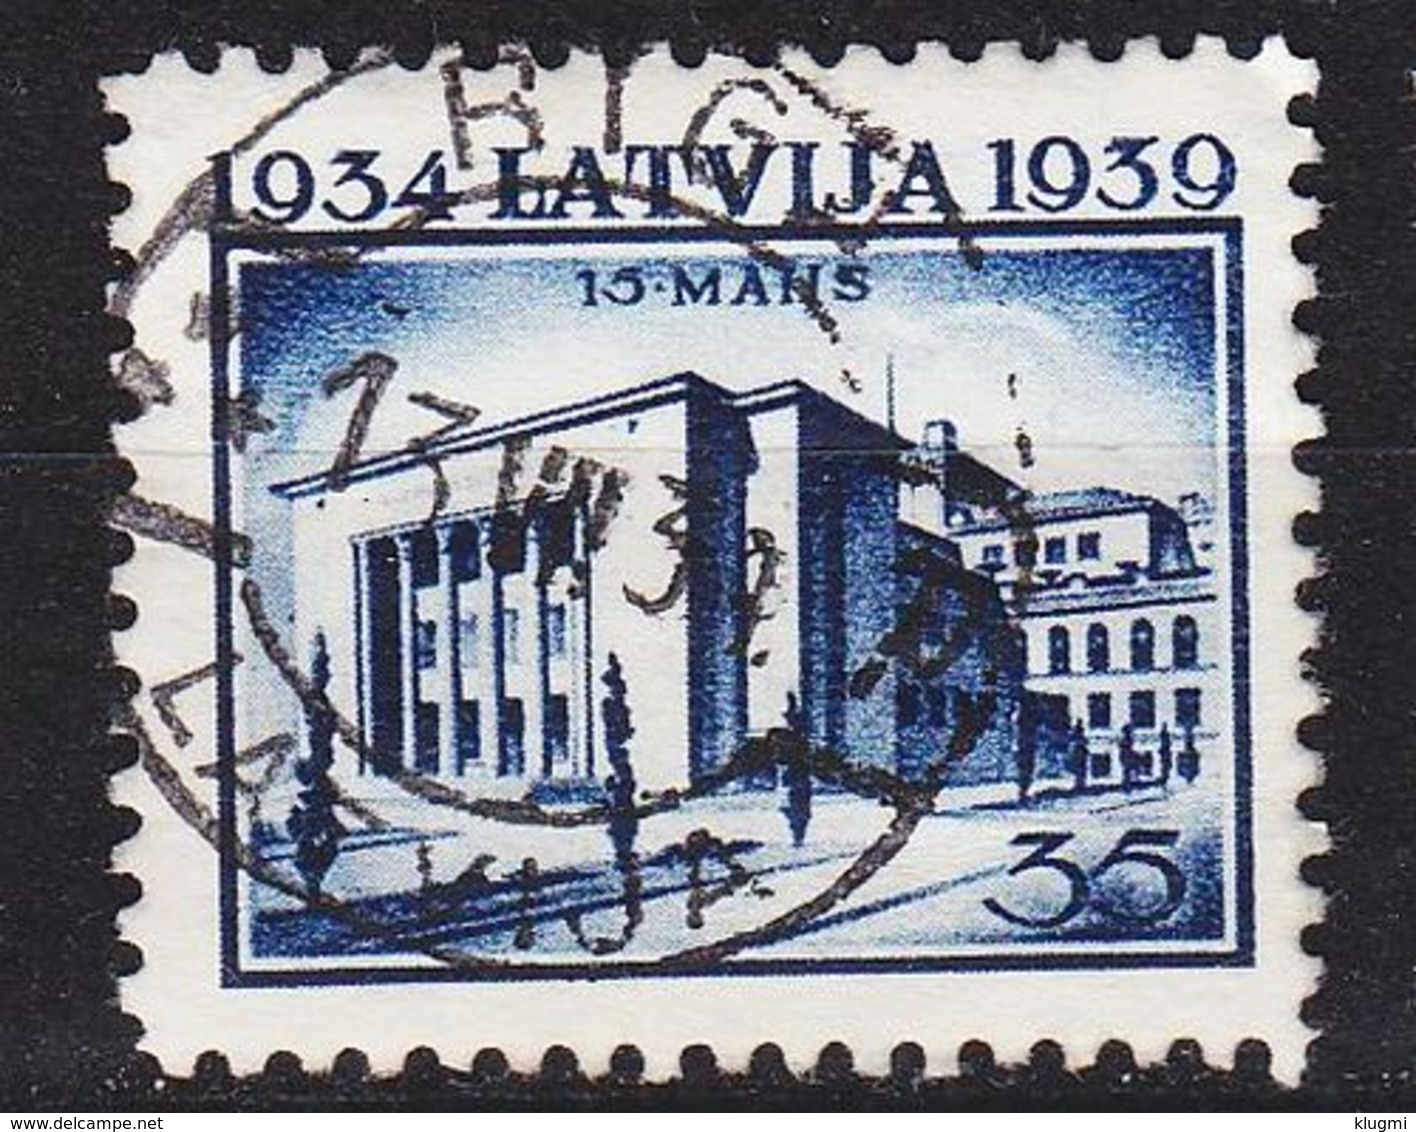 LETTLAND LATVIJA [1939] MiNr 0276 ( O/used ) - Latvia